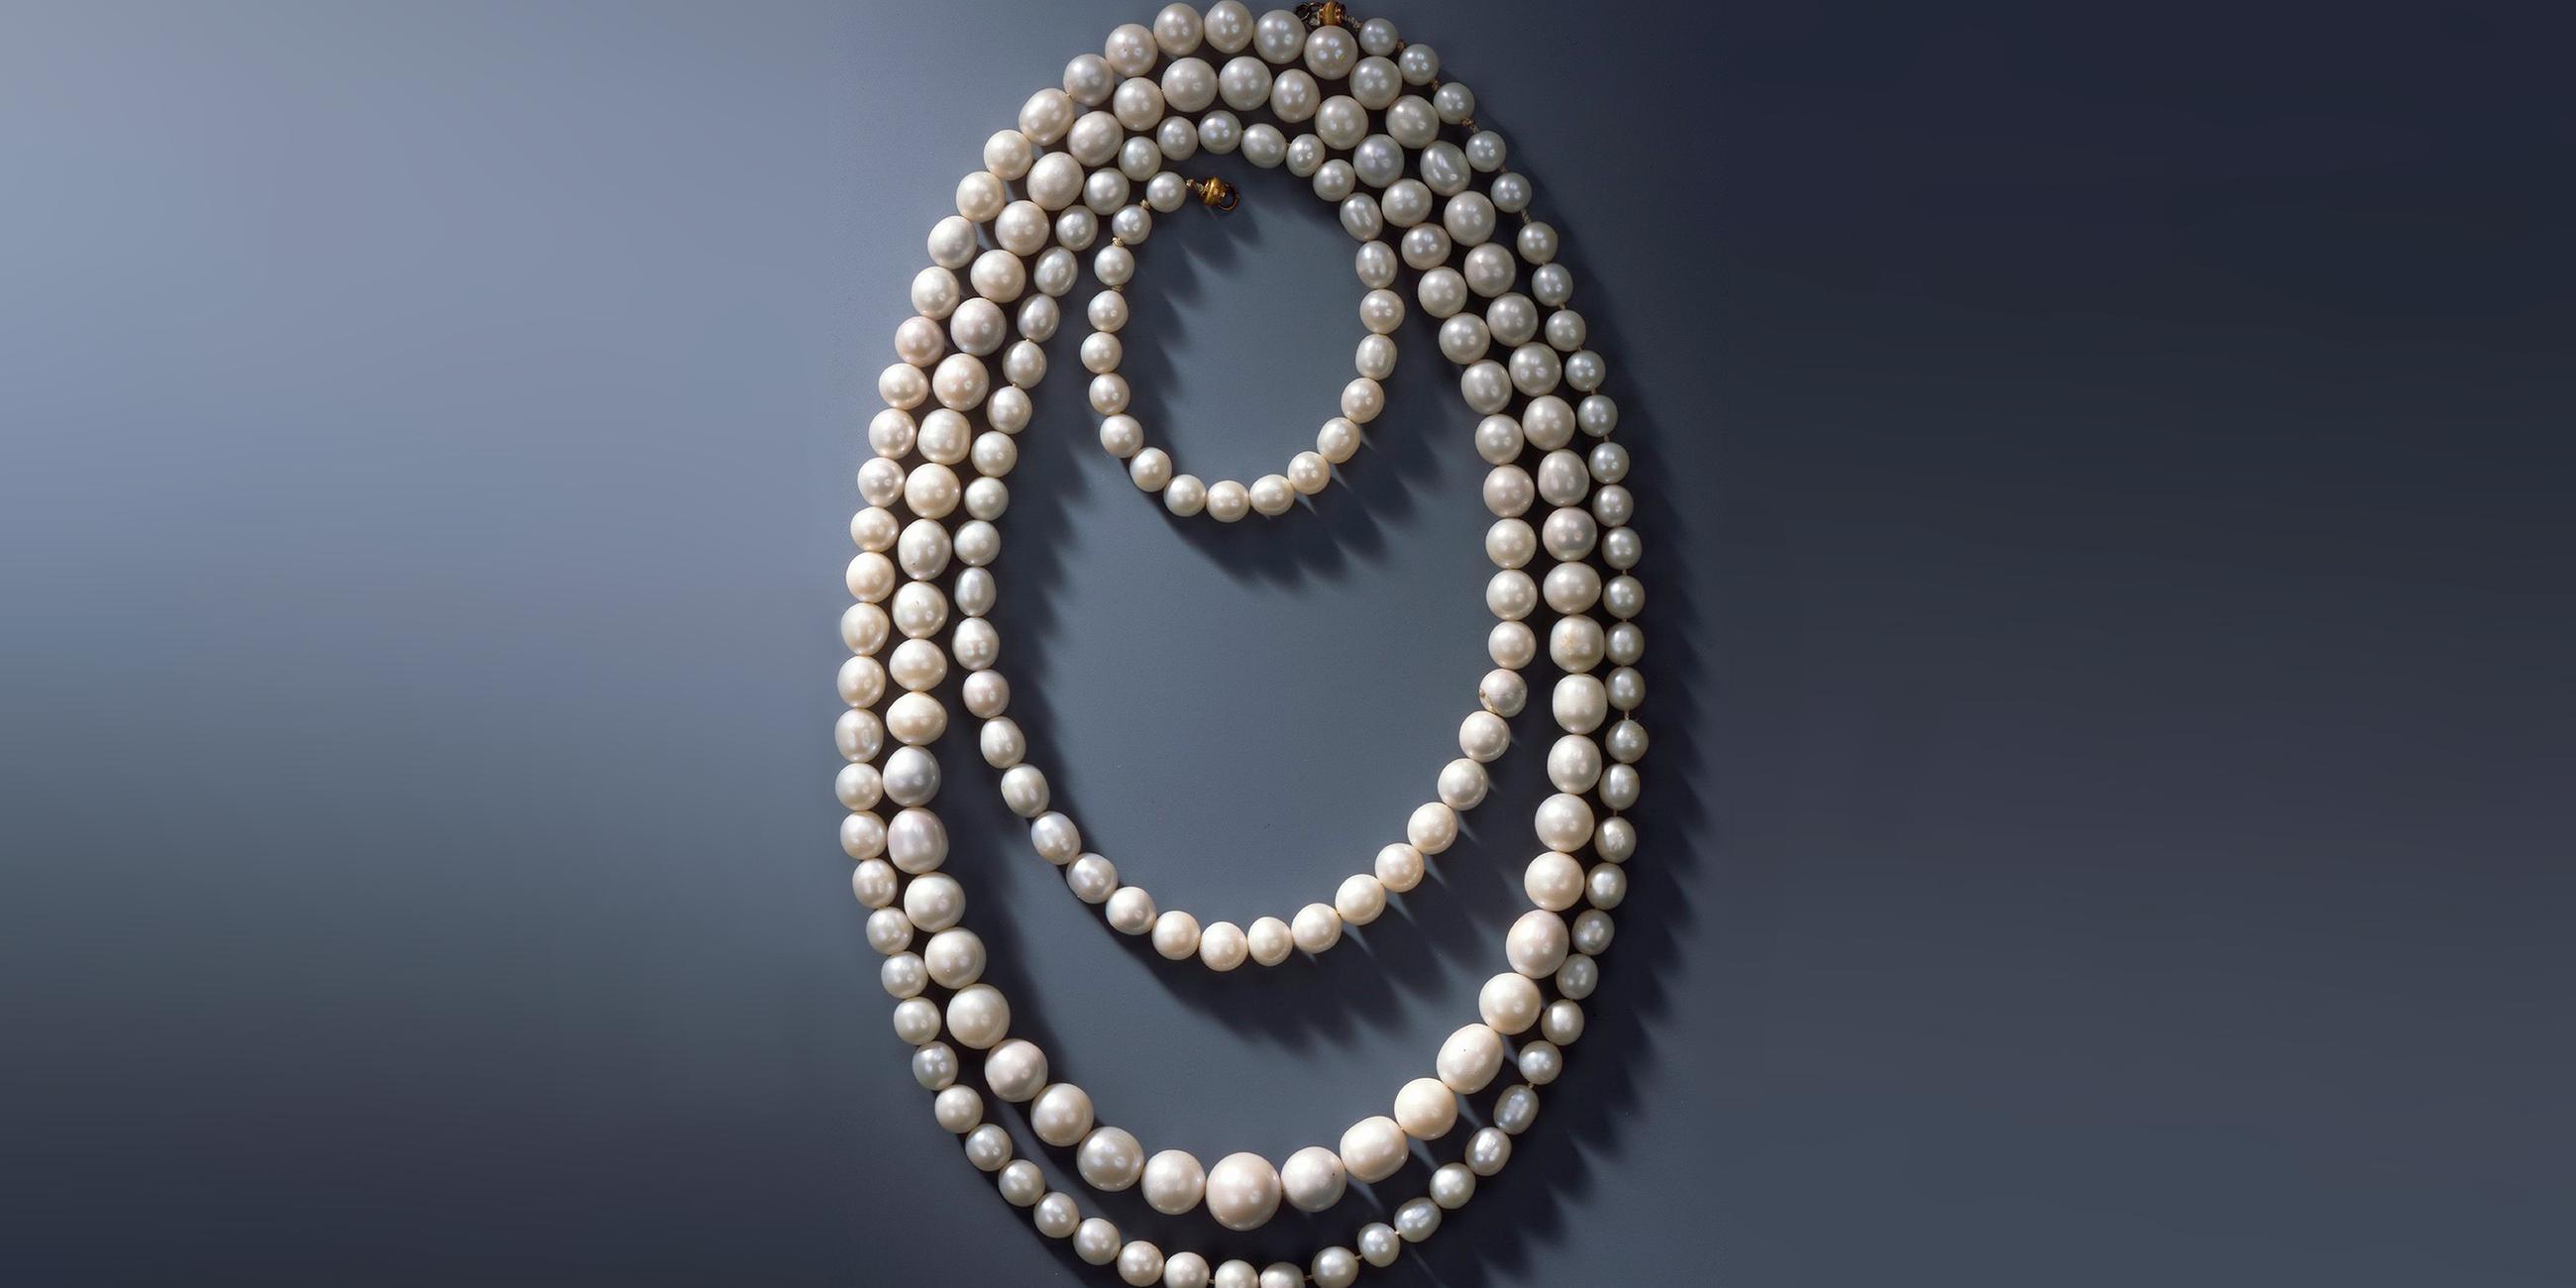 Kette aus 177 sächsischen Perlen, die aus vogtländischen Gewässern gewonnen wurden.